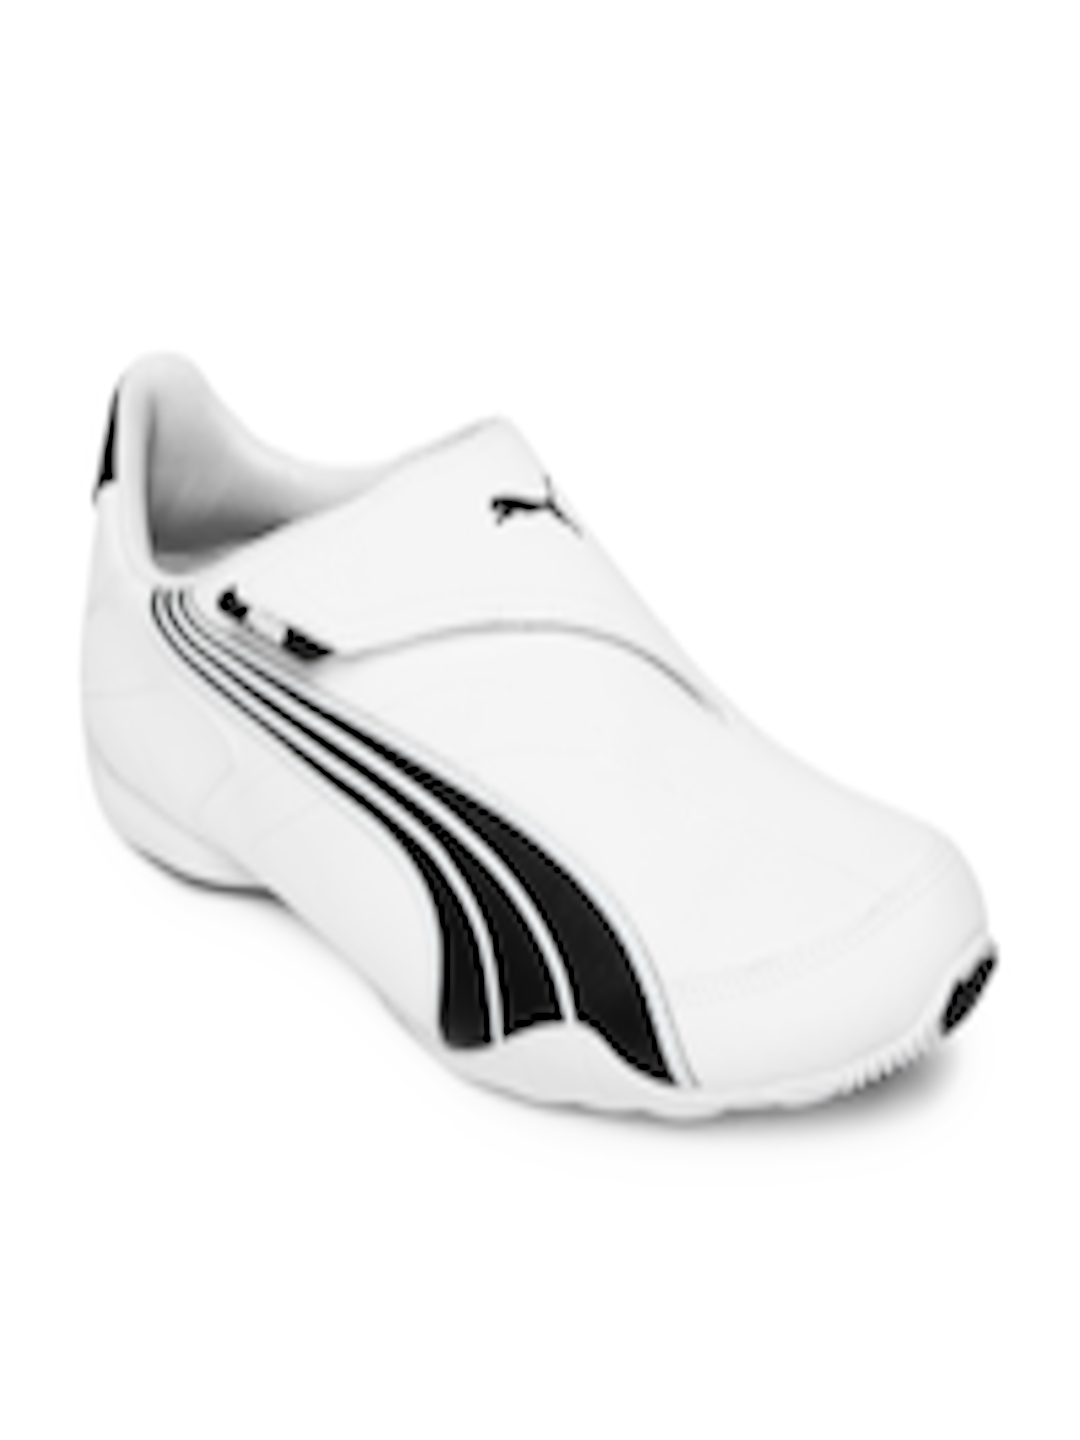 Buy Puma Men White Jiyu V NU Casual Shoes - Casual Shoes for Men 244876 ...